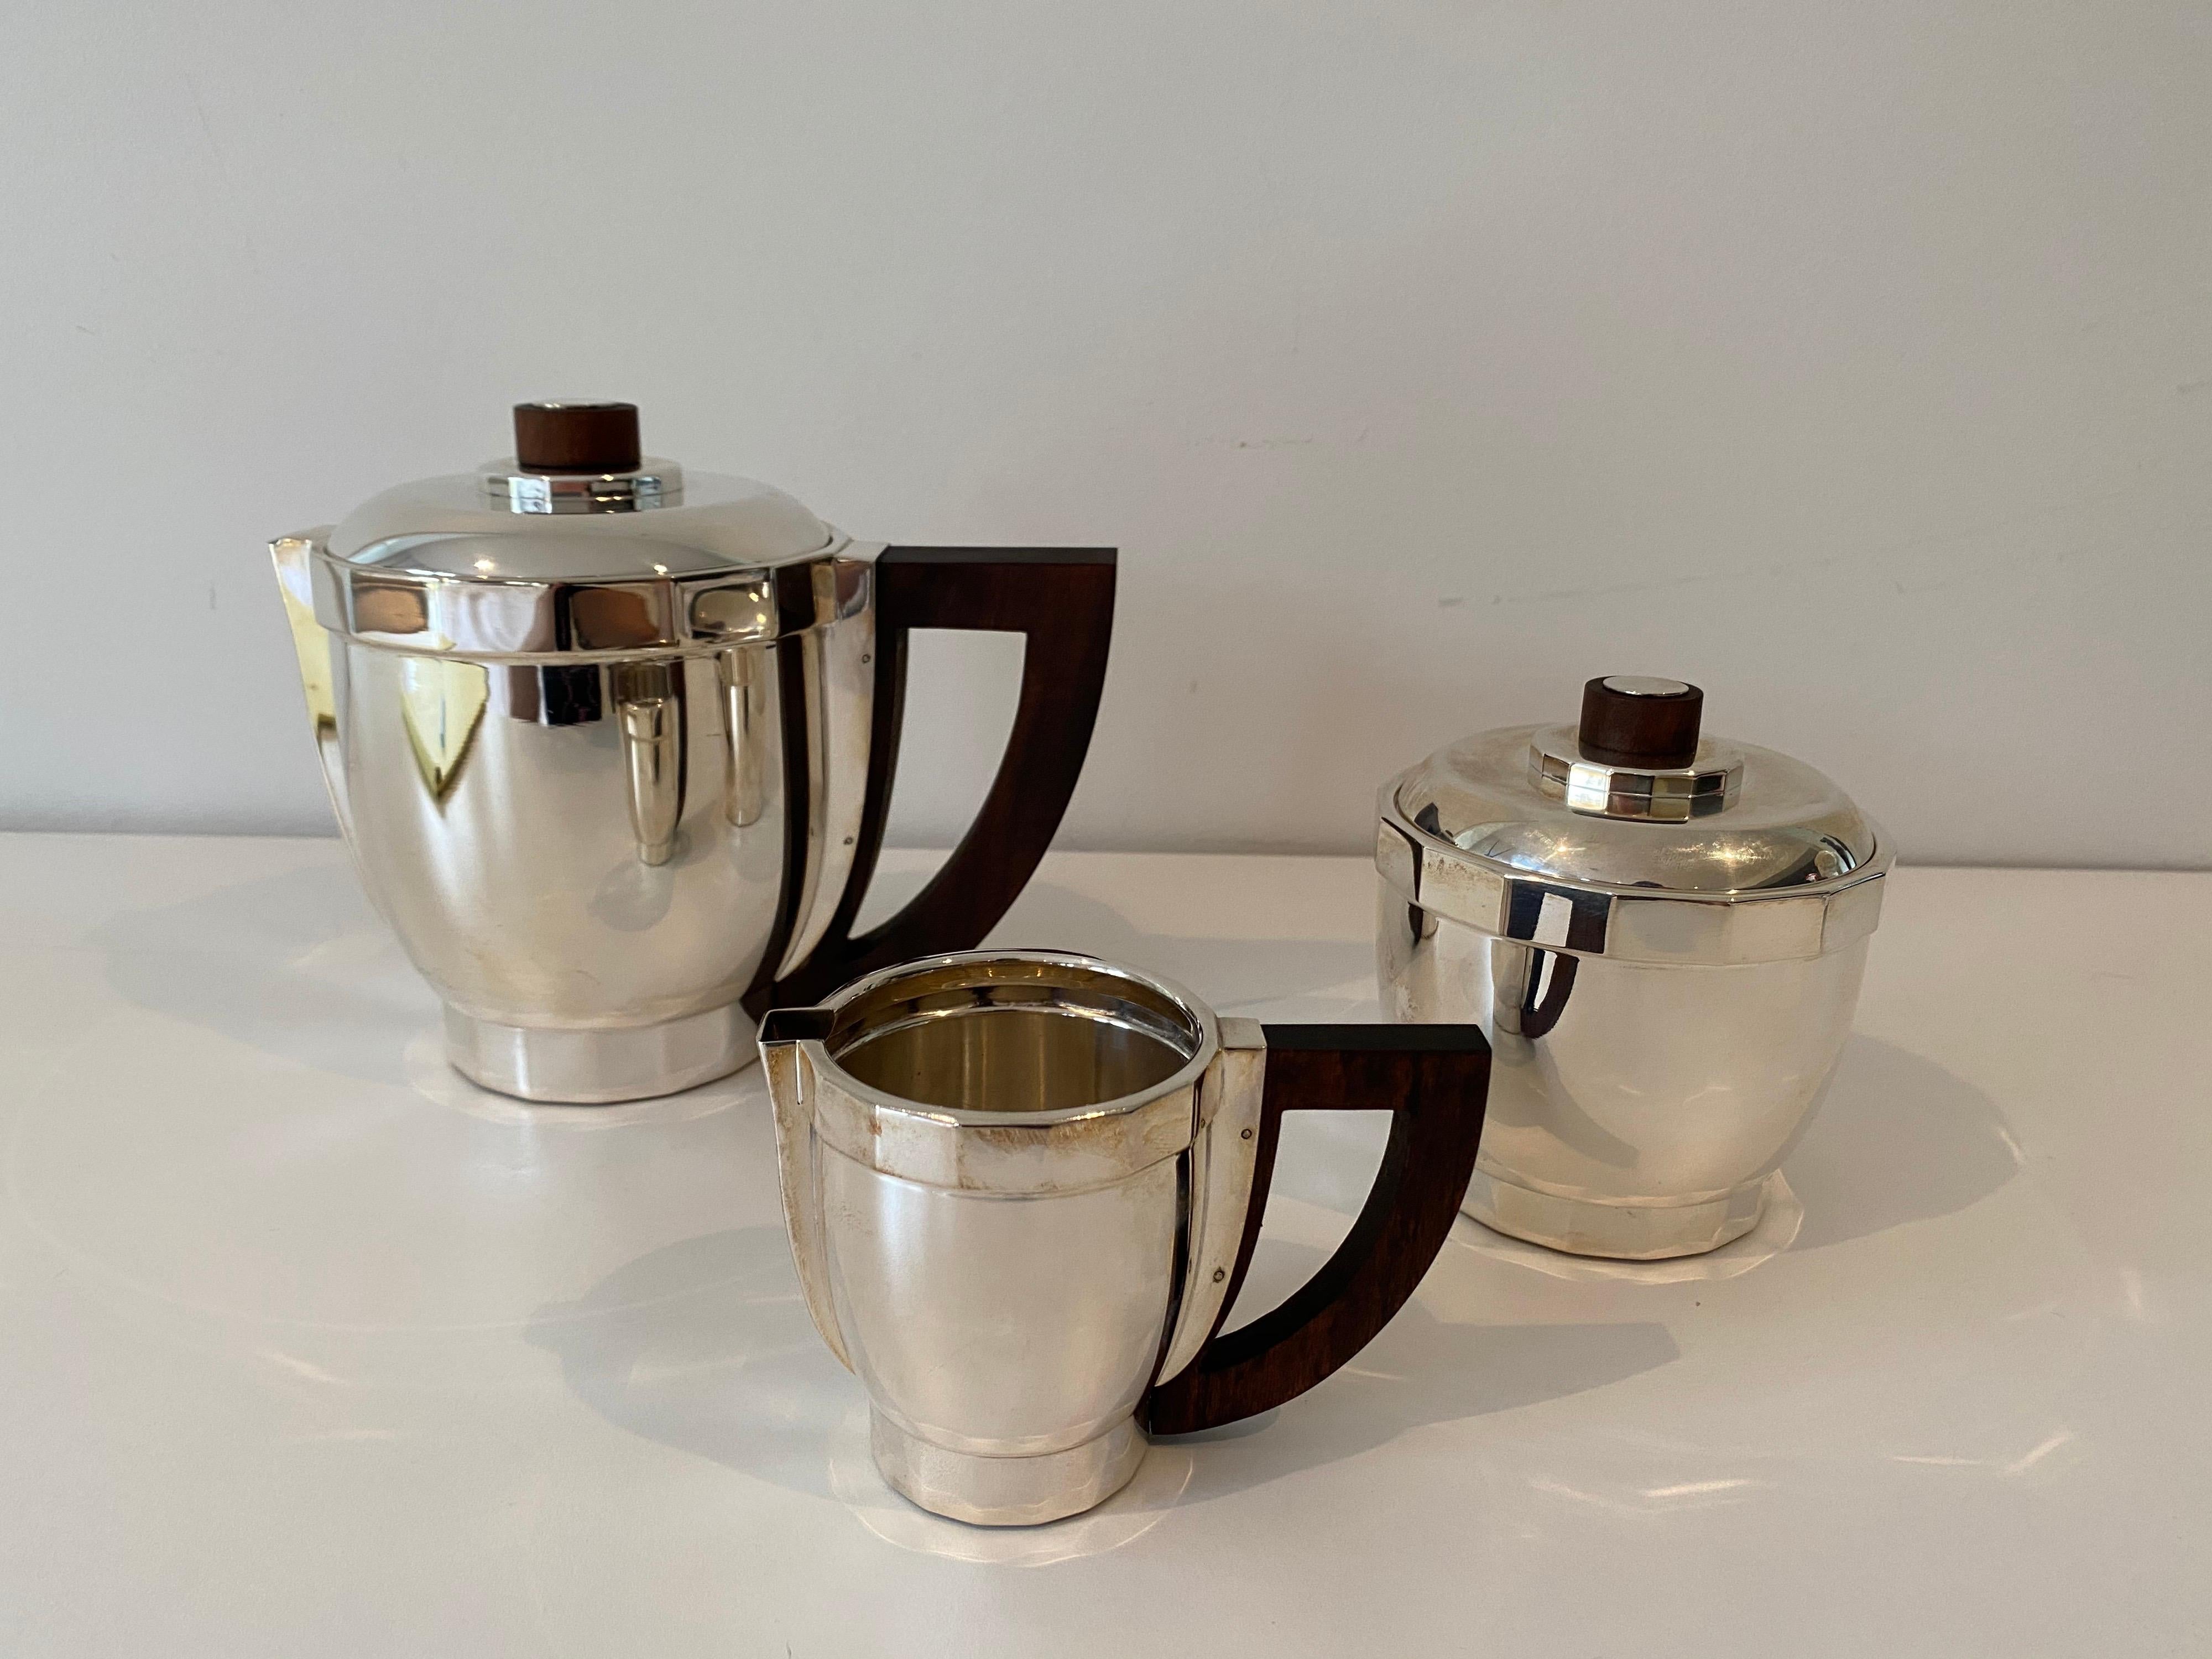 Service à café en métal argenté Puiforcat du début du XXe siècle, avec poignées en bois de rose, de la Collection S/One, conçu en 1927. L'ensemble comprend une cafetière de 6,25